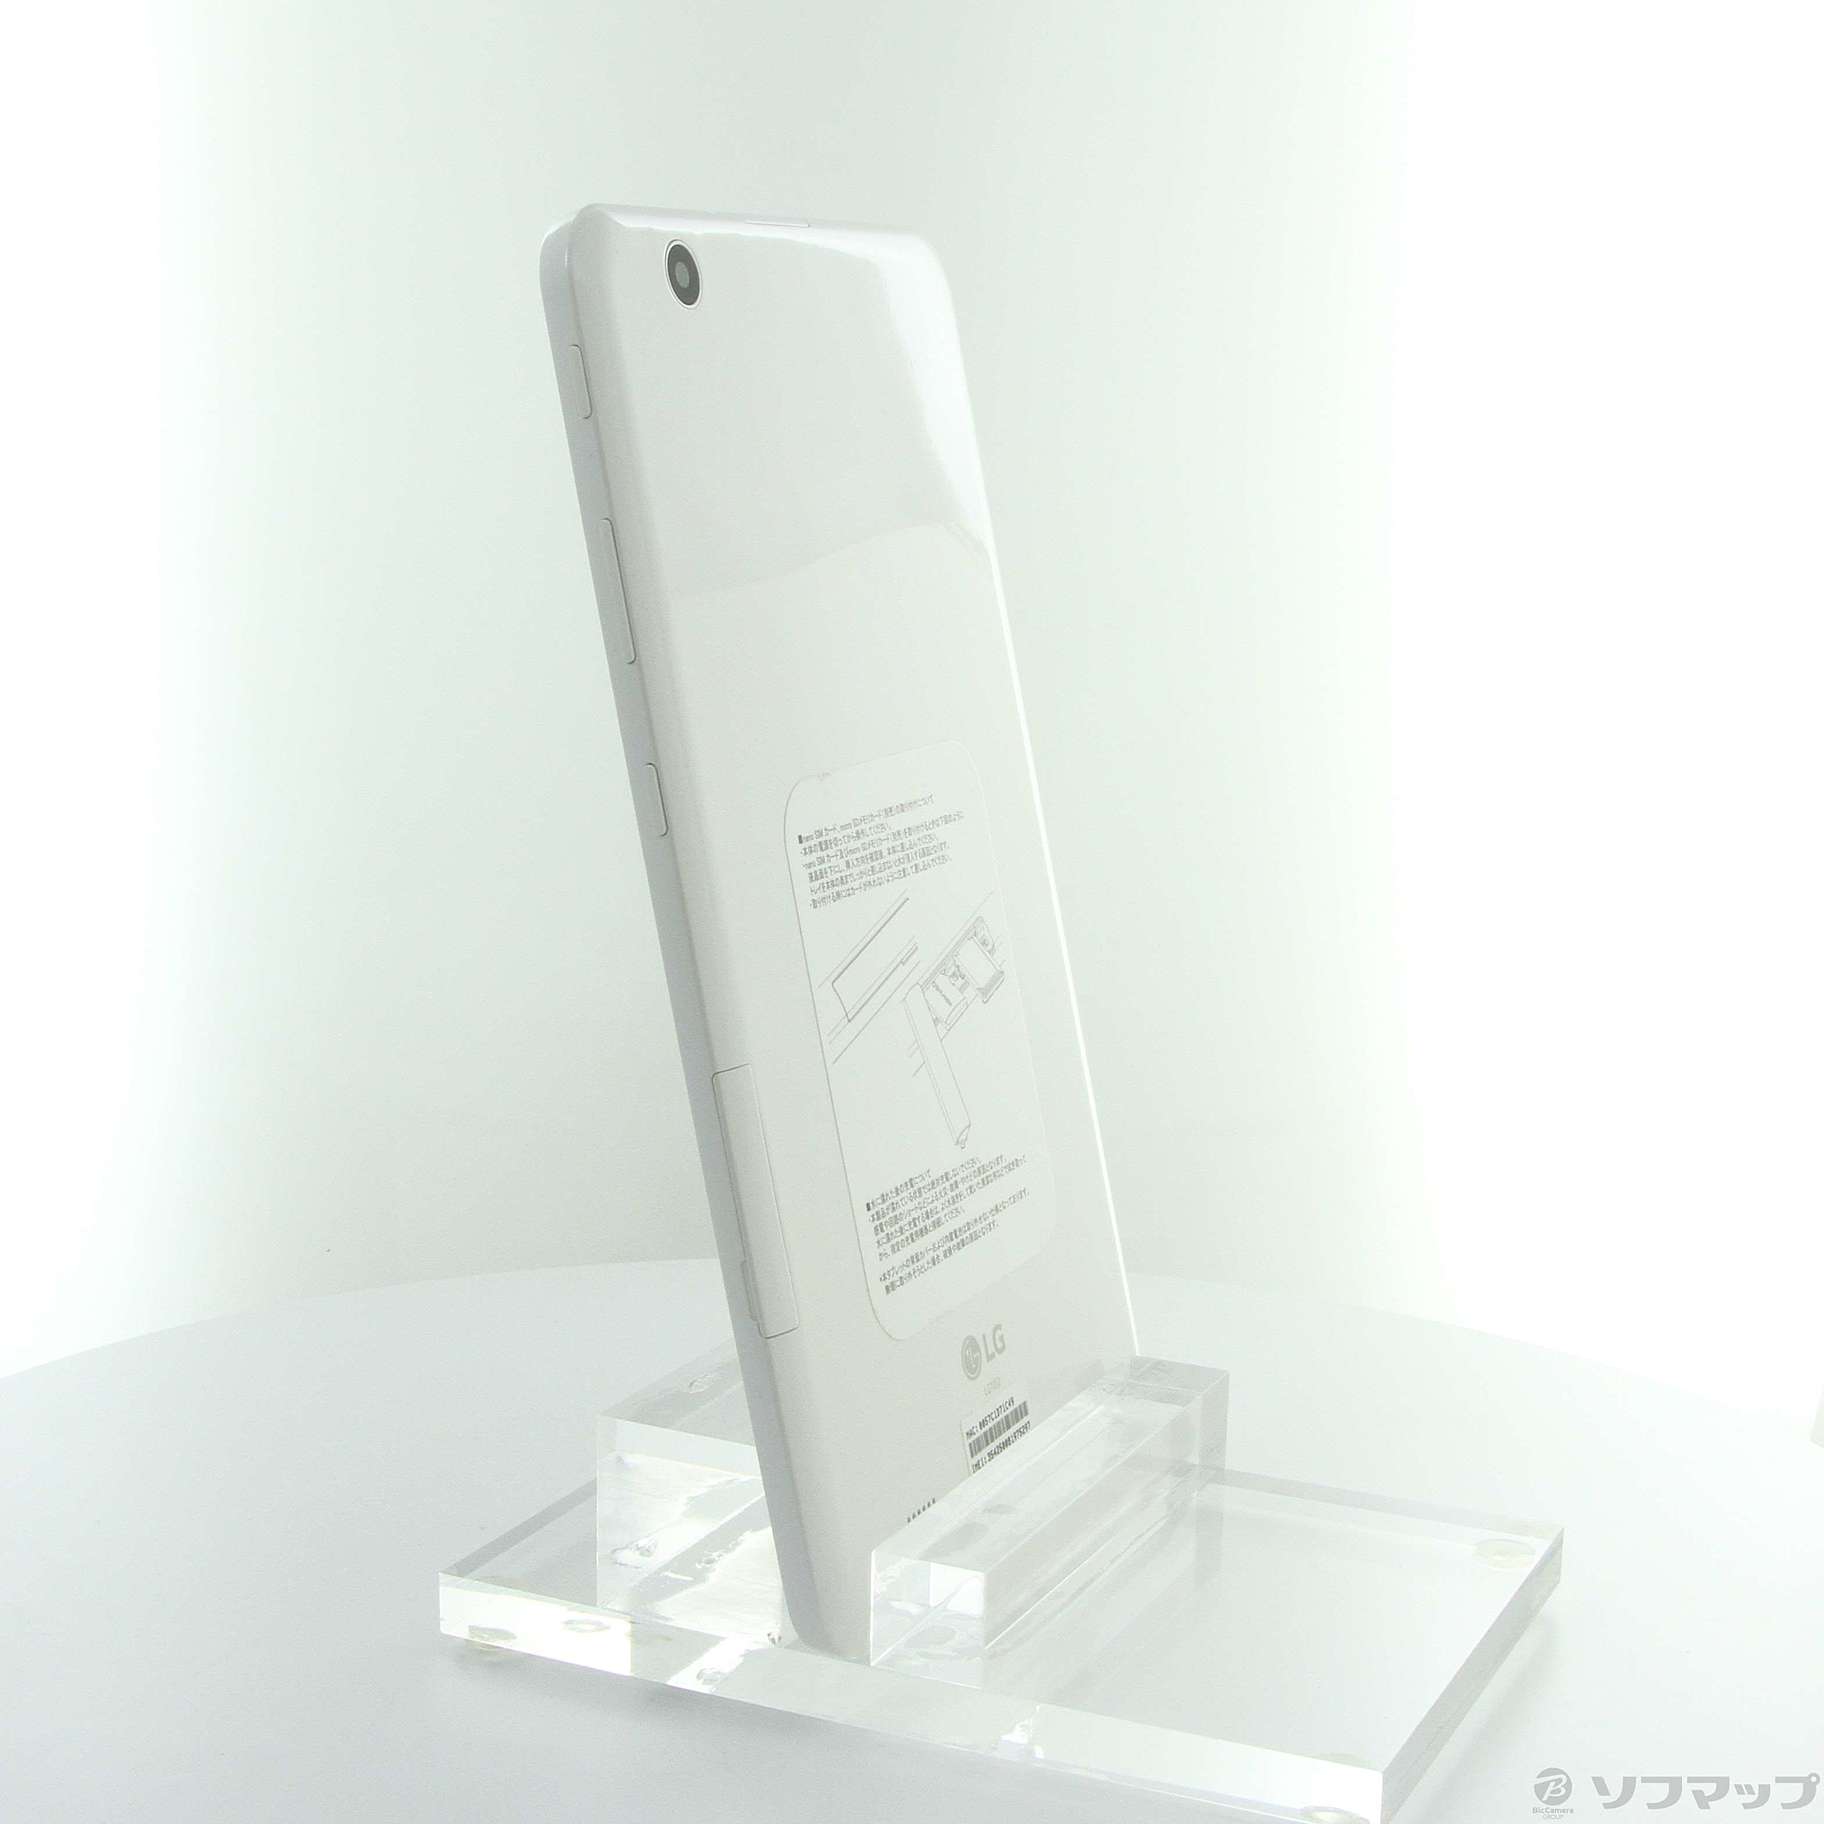 PC/タブレット新品未使用 ☆ LG/エルジー GPad 8.0Ⅲ LGT02 ホワイト